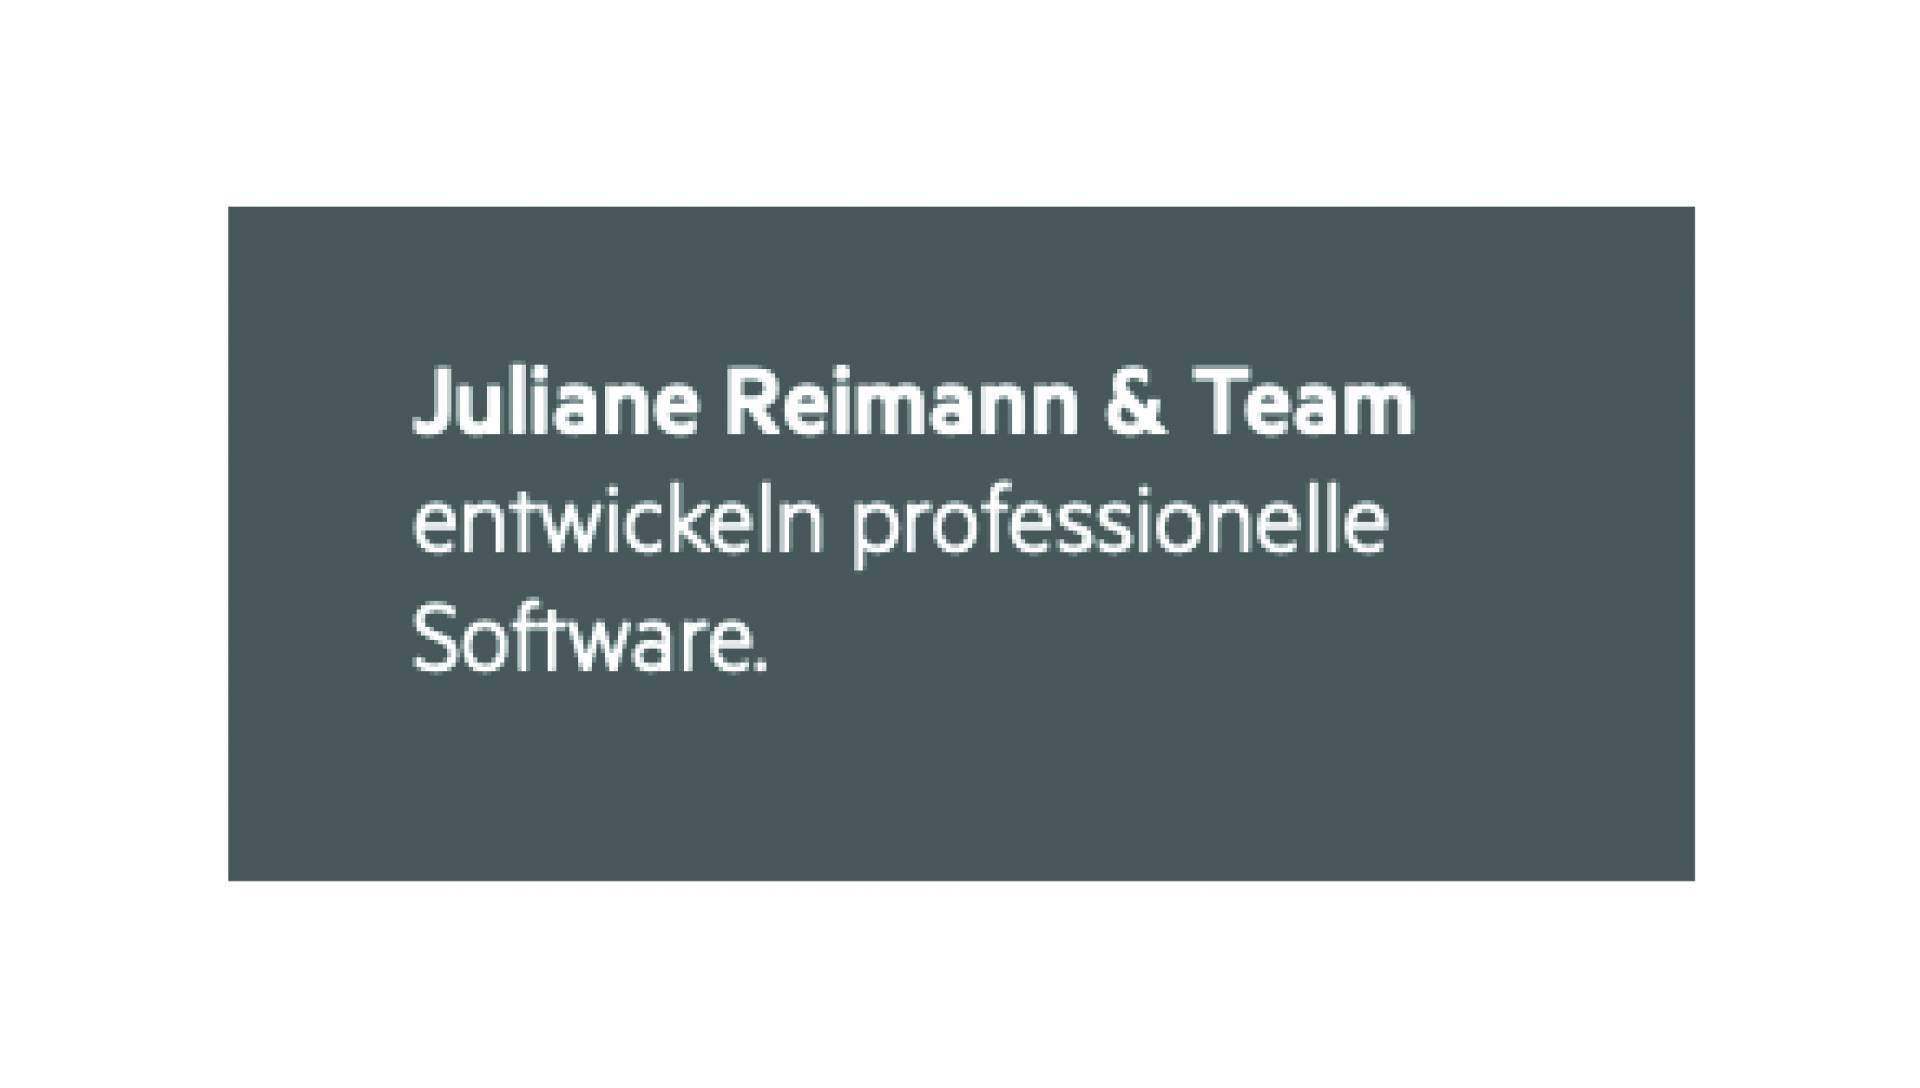 Juliane Reimann & Team